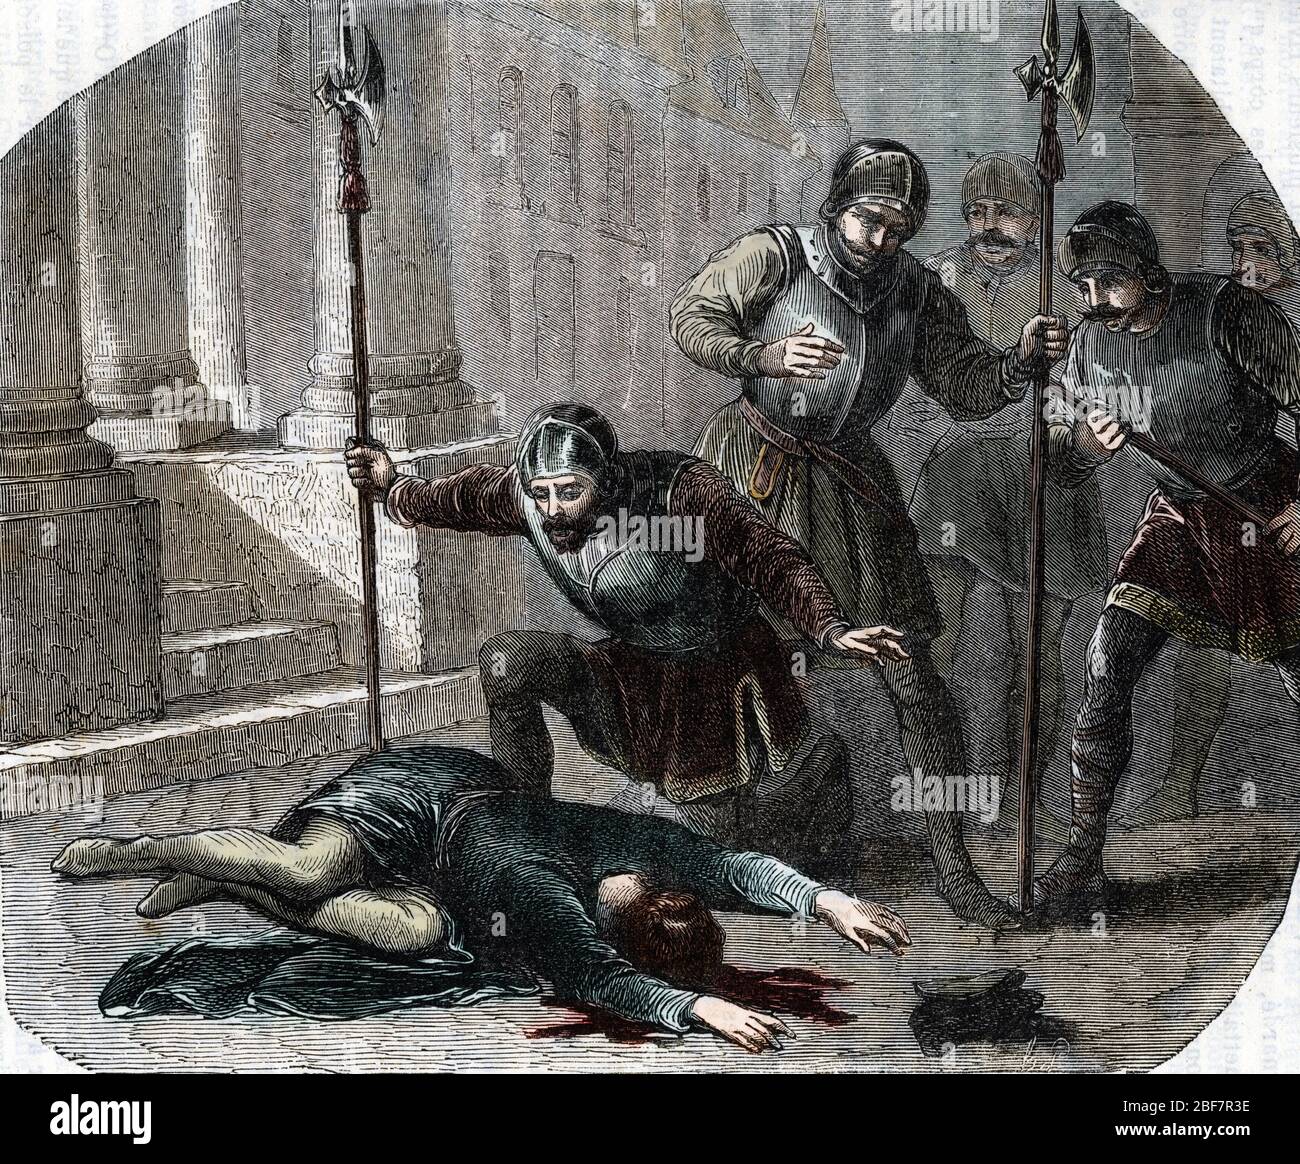 Guerre de religions : 'le massacre de la nuit de la Saint Barthelemy (Saint-Barthelemy) le 24/08/1572' (St Bartholomew's Day massacre on the 24th augu Stock Photo